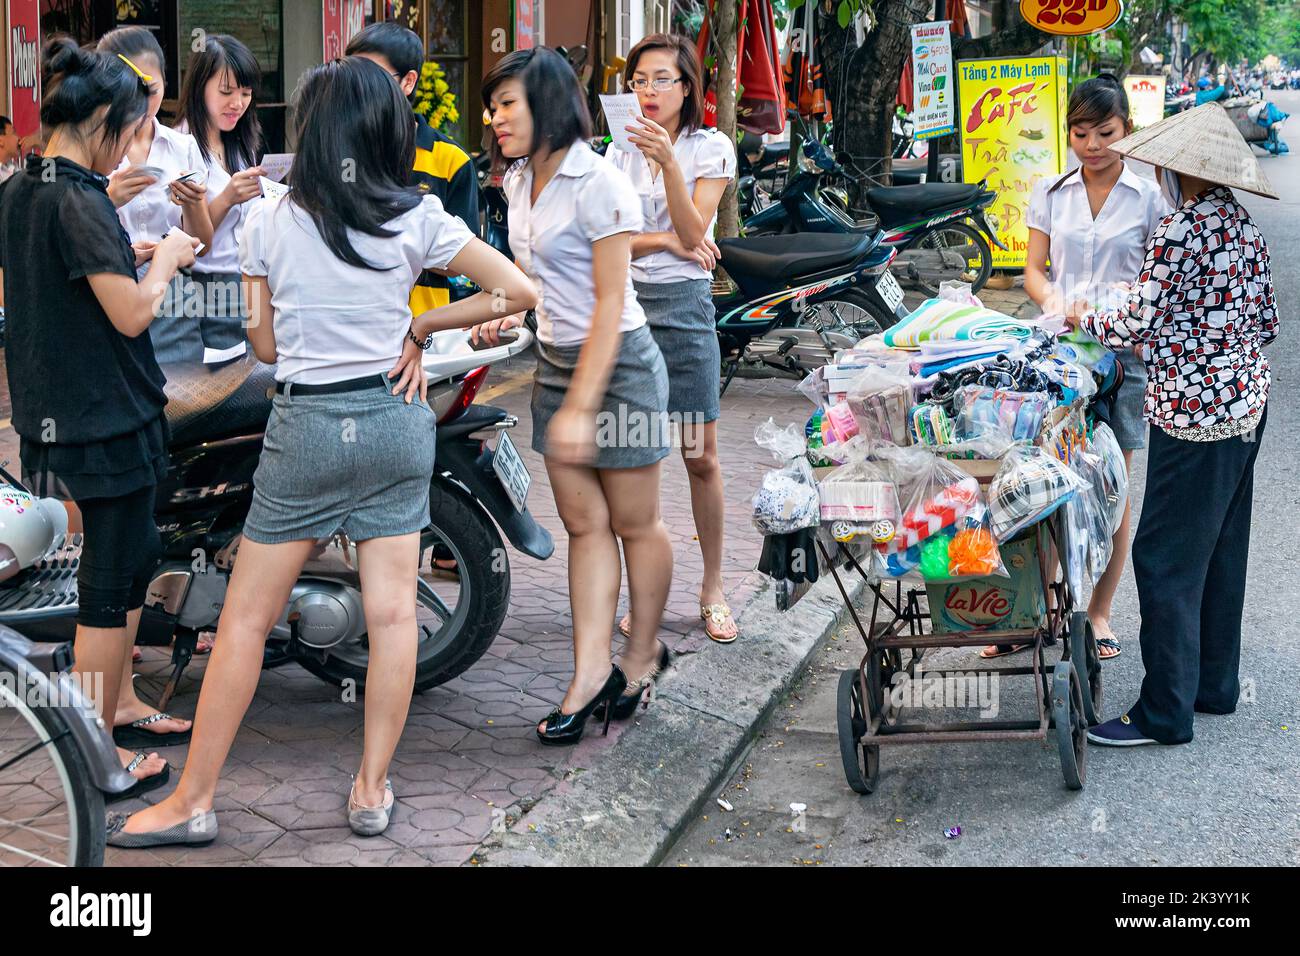 Joven estudiante vietnamita en uniforme con vendedores ambulantes, Hai Phong, Vietnam Foto de stock